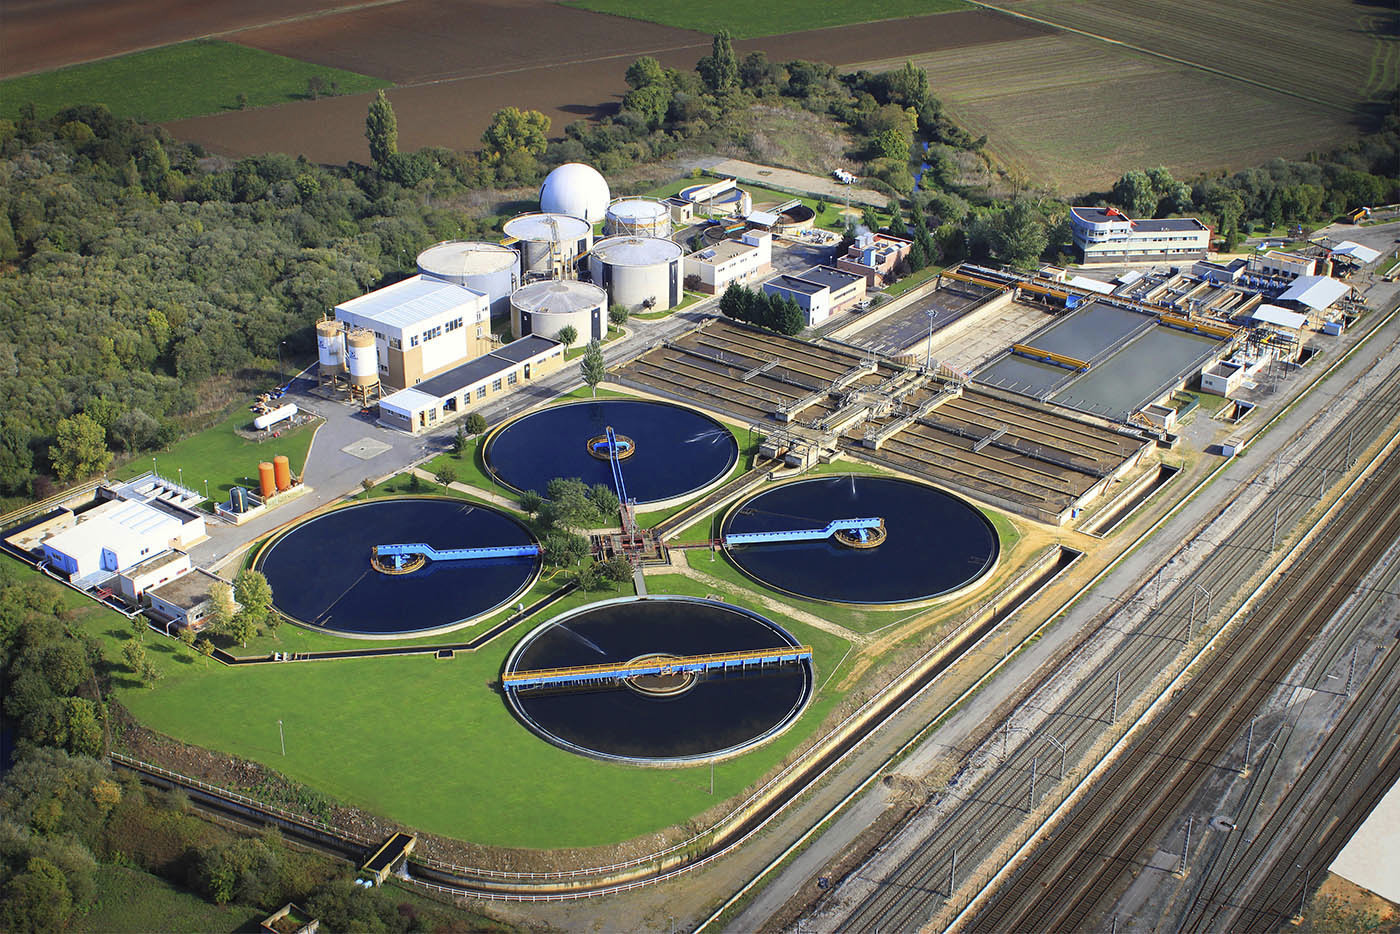 Estacin Depuradora de Aguas Residuales (EDAR) de Crispijana (Vitoria), donde se han tomado las muestras para el estudio de farmacontaminacin de la UPV.